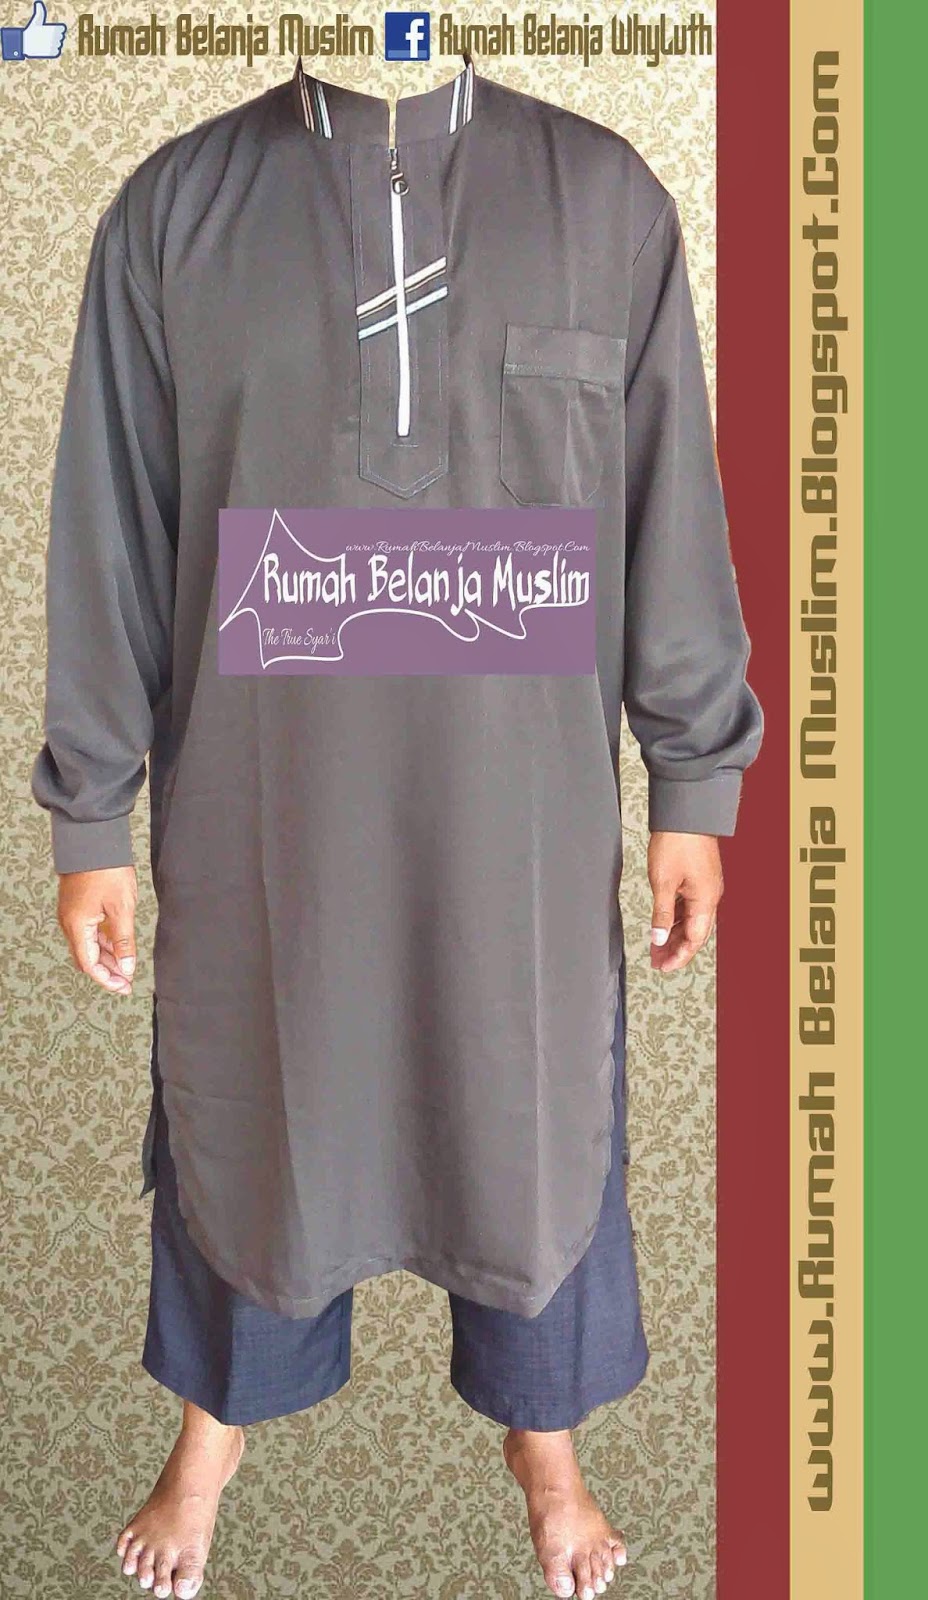 RUMAH BELANJA MUSLIM Baju Muslim Model Gamis Pakistan 